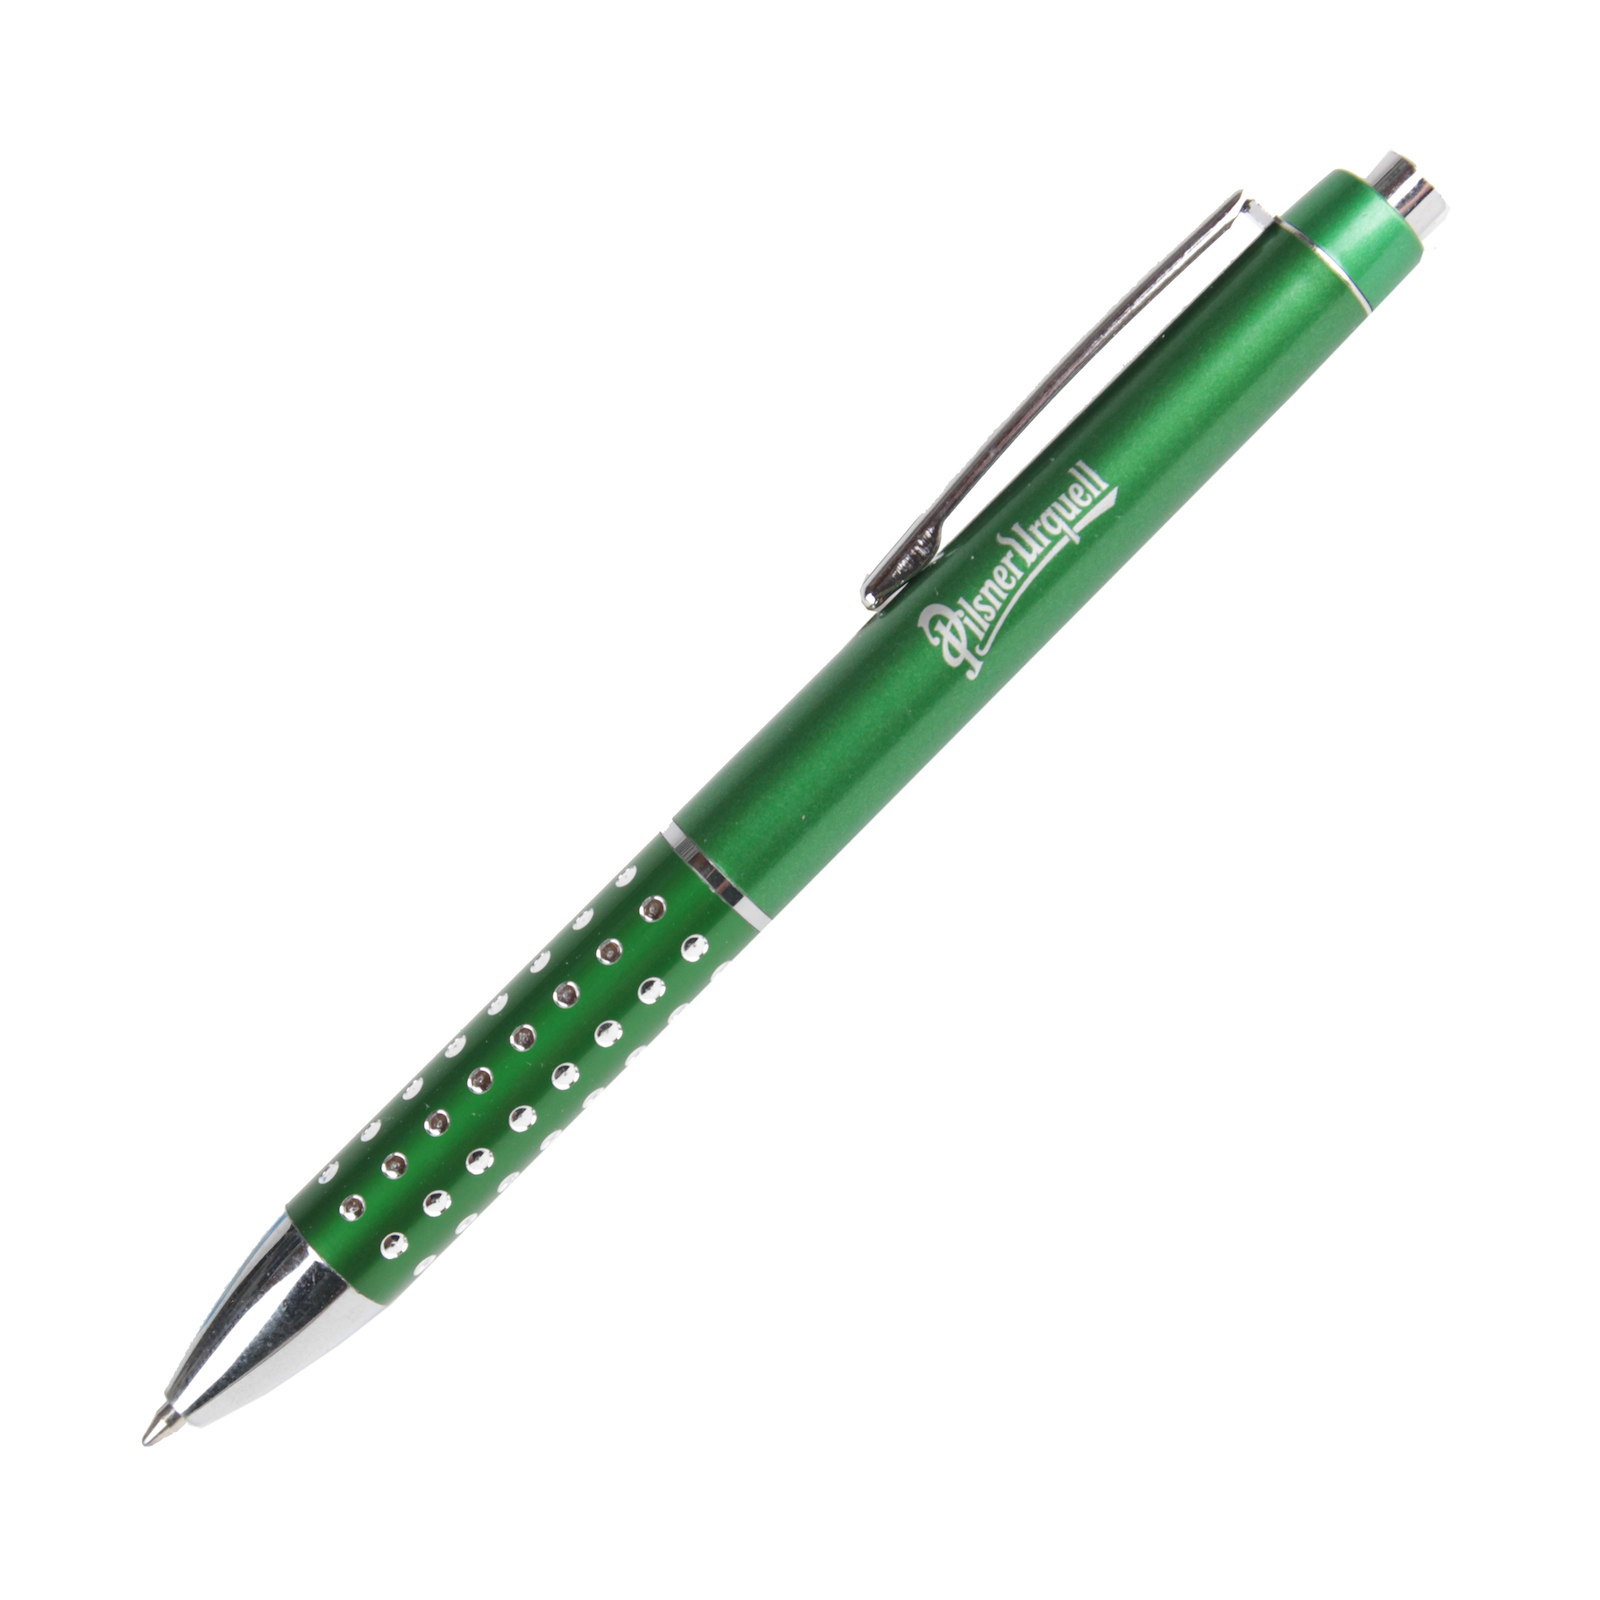 Pilsner Urquell promotional pen - green Newton